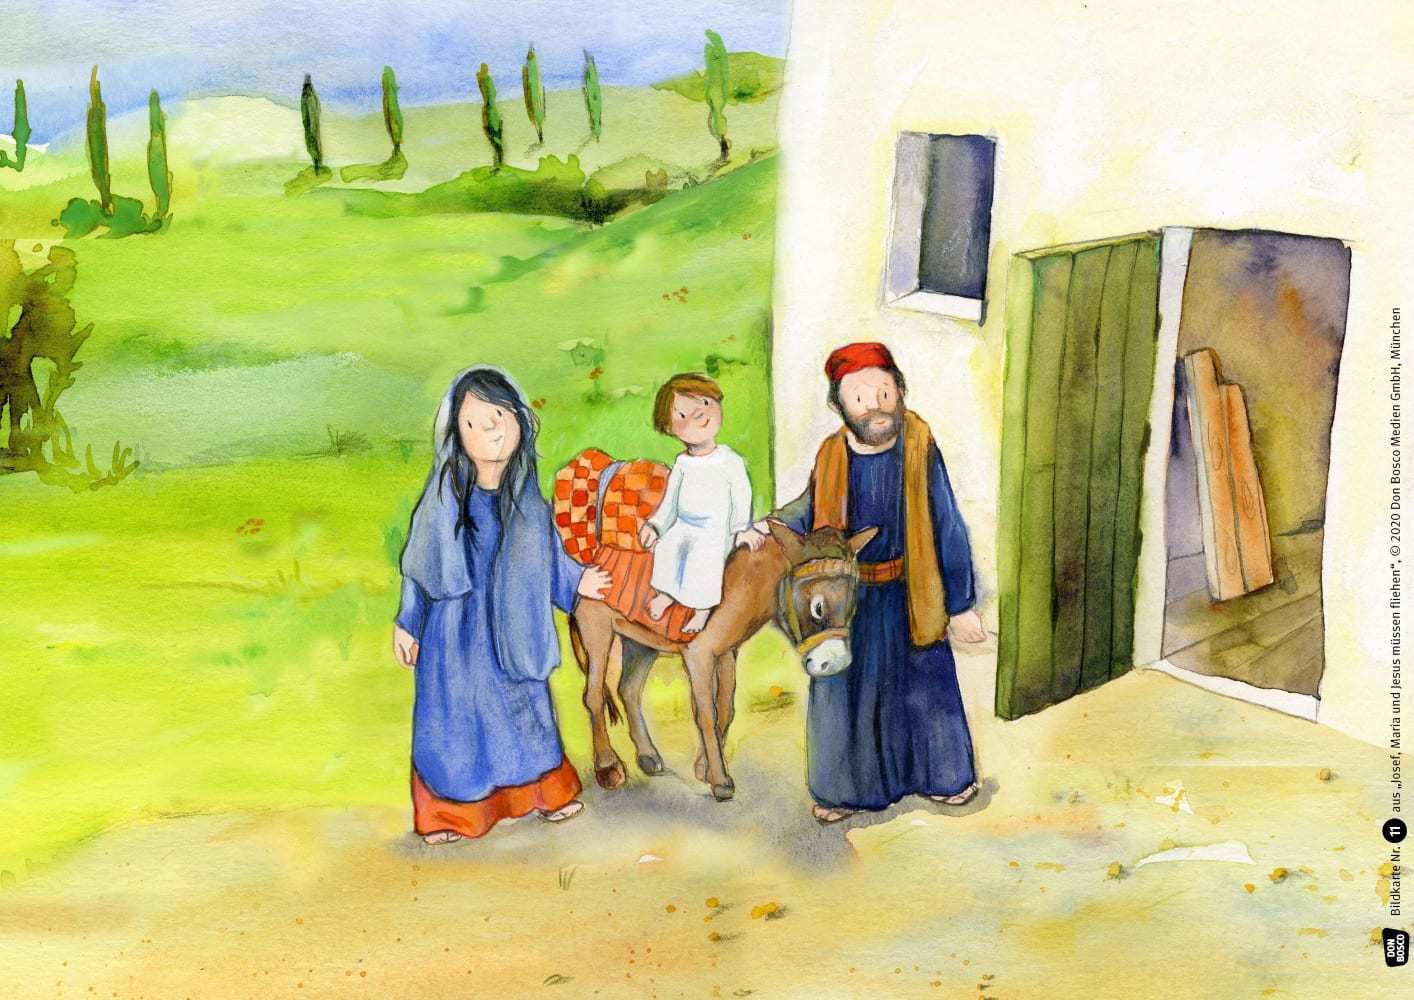 Josef, Maria und Jesus müssen fliehen. Kamishibai Bildkartenset